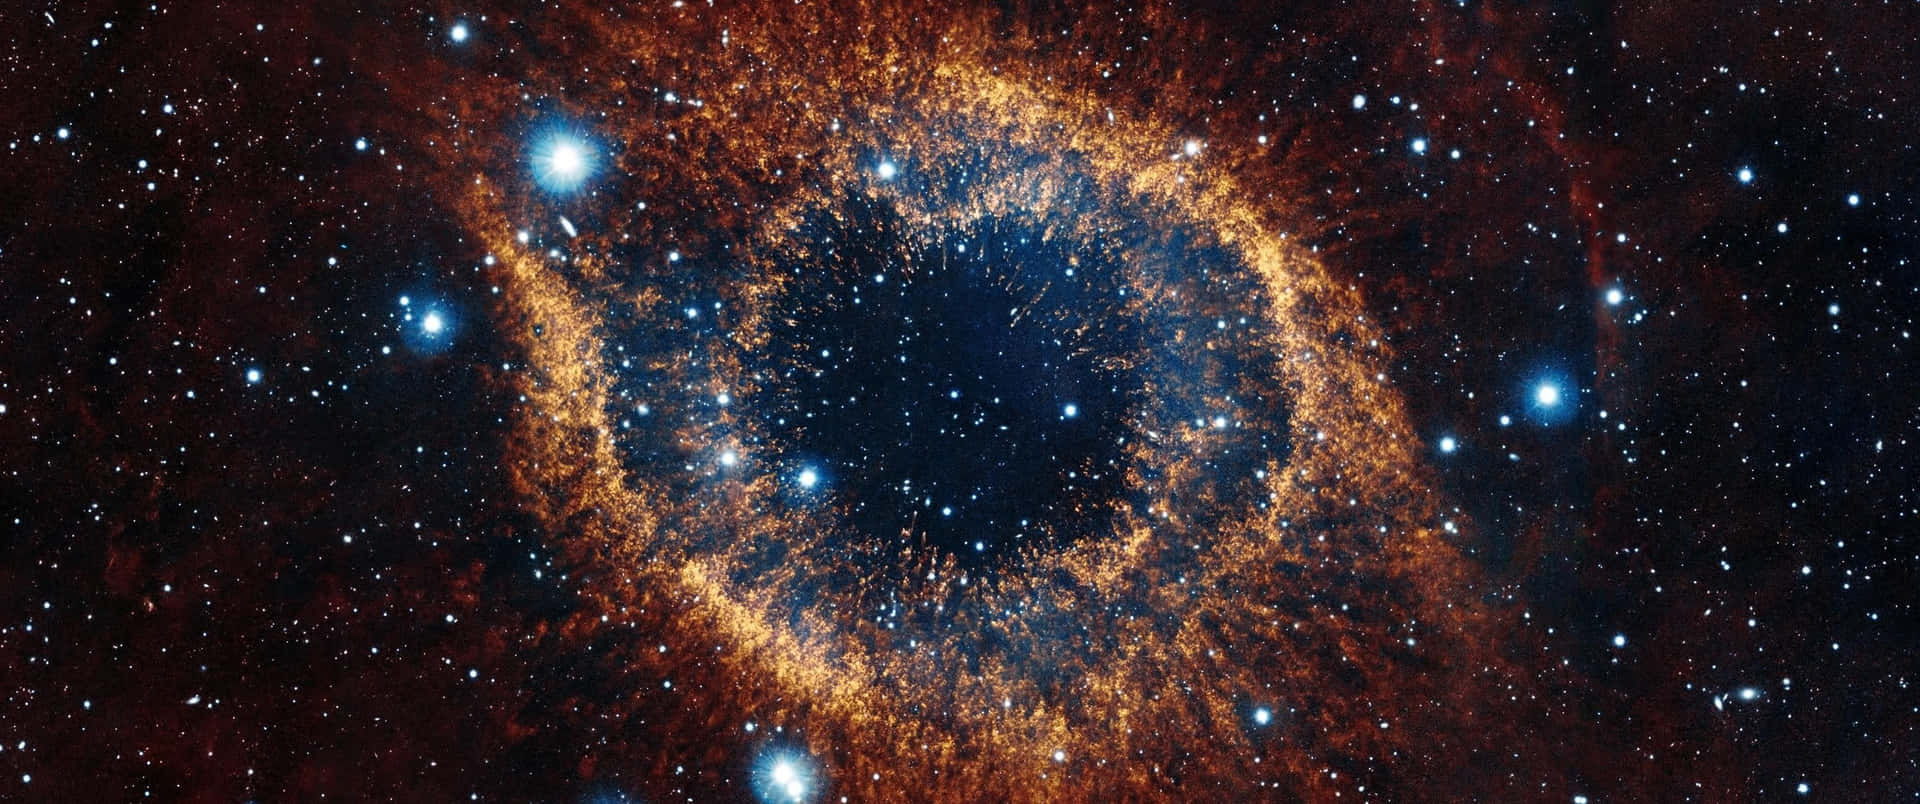 3440x1440alta Definizione Nebulosa Helix Sfondo